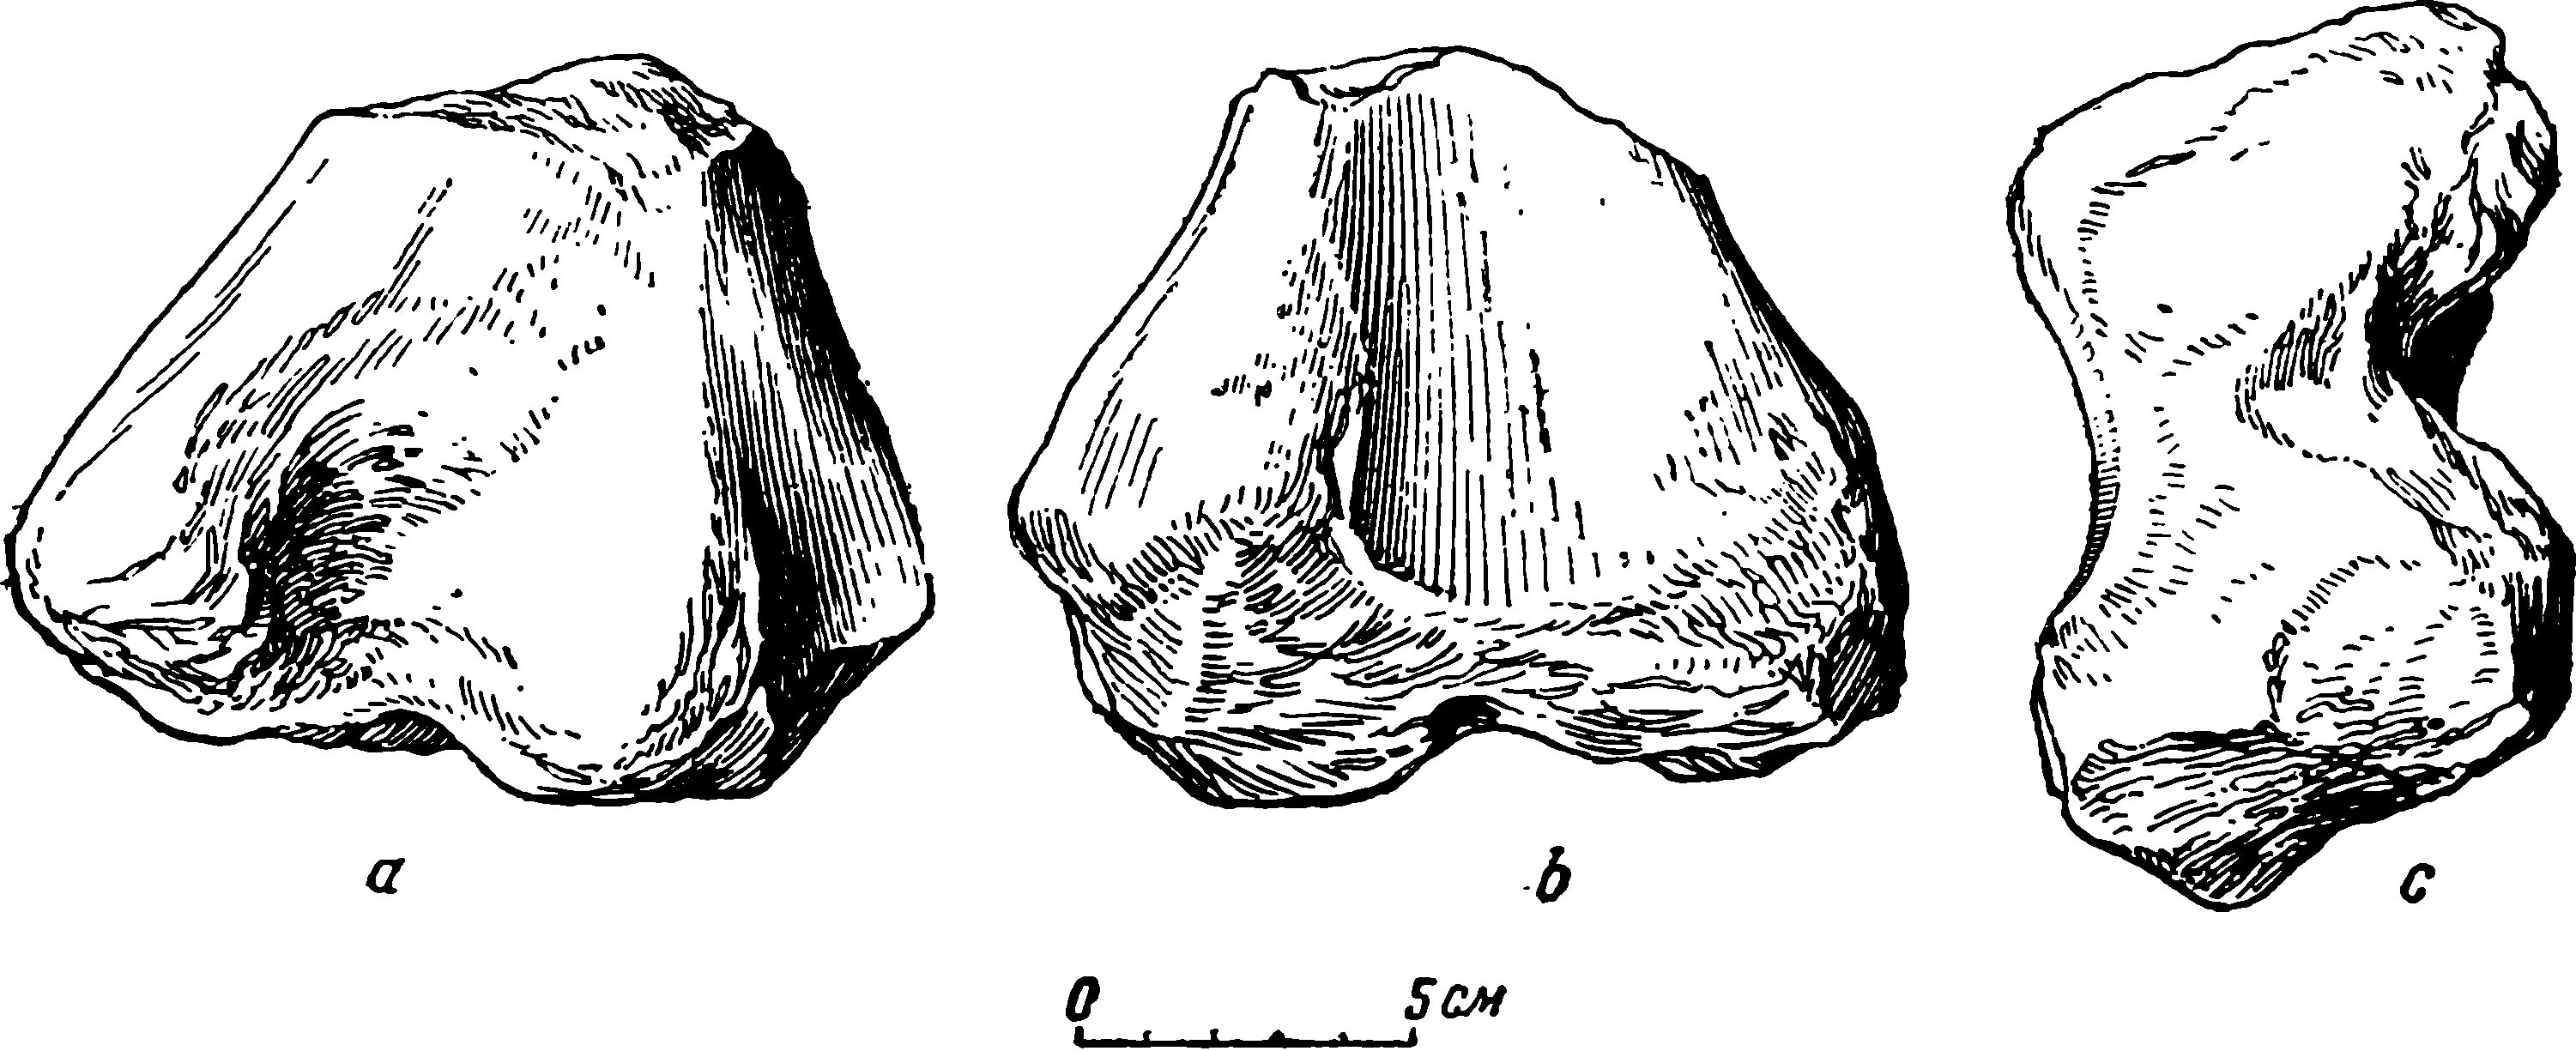 Рис. 30. Deuterosaurus gigas sp. nov. Правая бедренная кость (femur), дистальный конец, ПИН № 294/20. a — вид сбоку; b — вид сверху; c — вид снизу